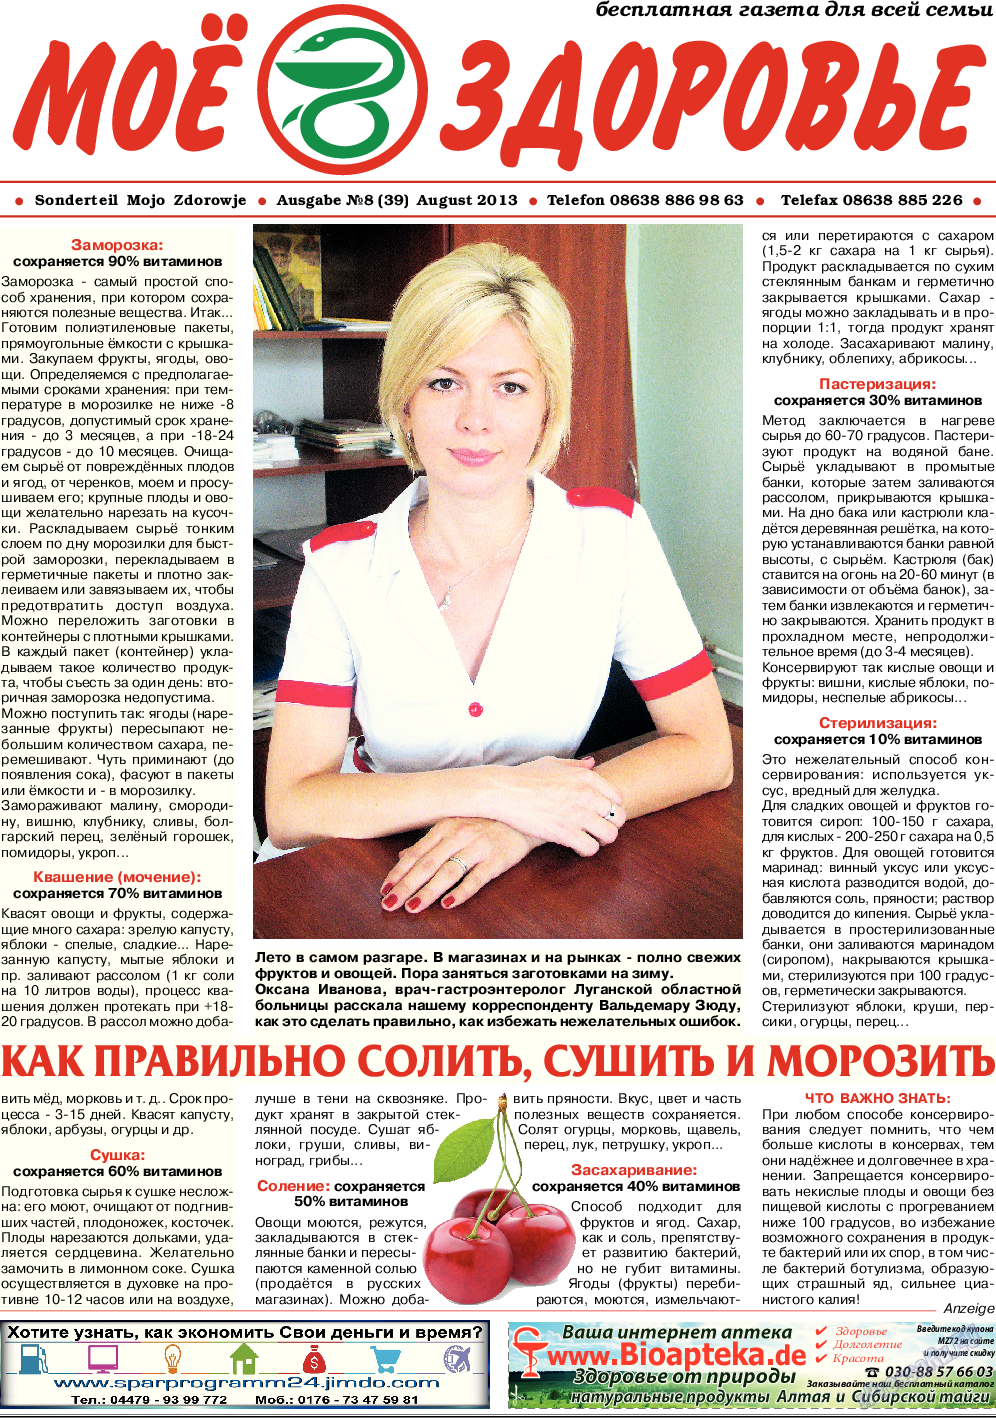 Кругозор, газета. 2013 №8 стр.11